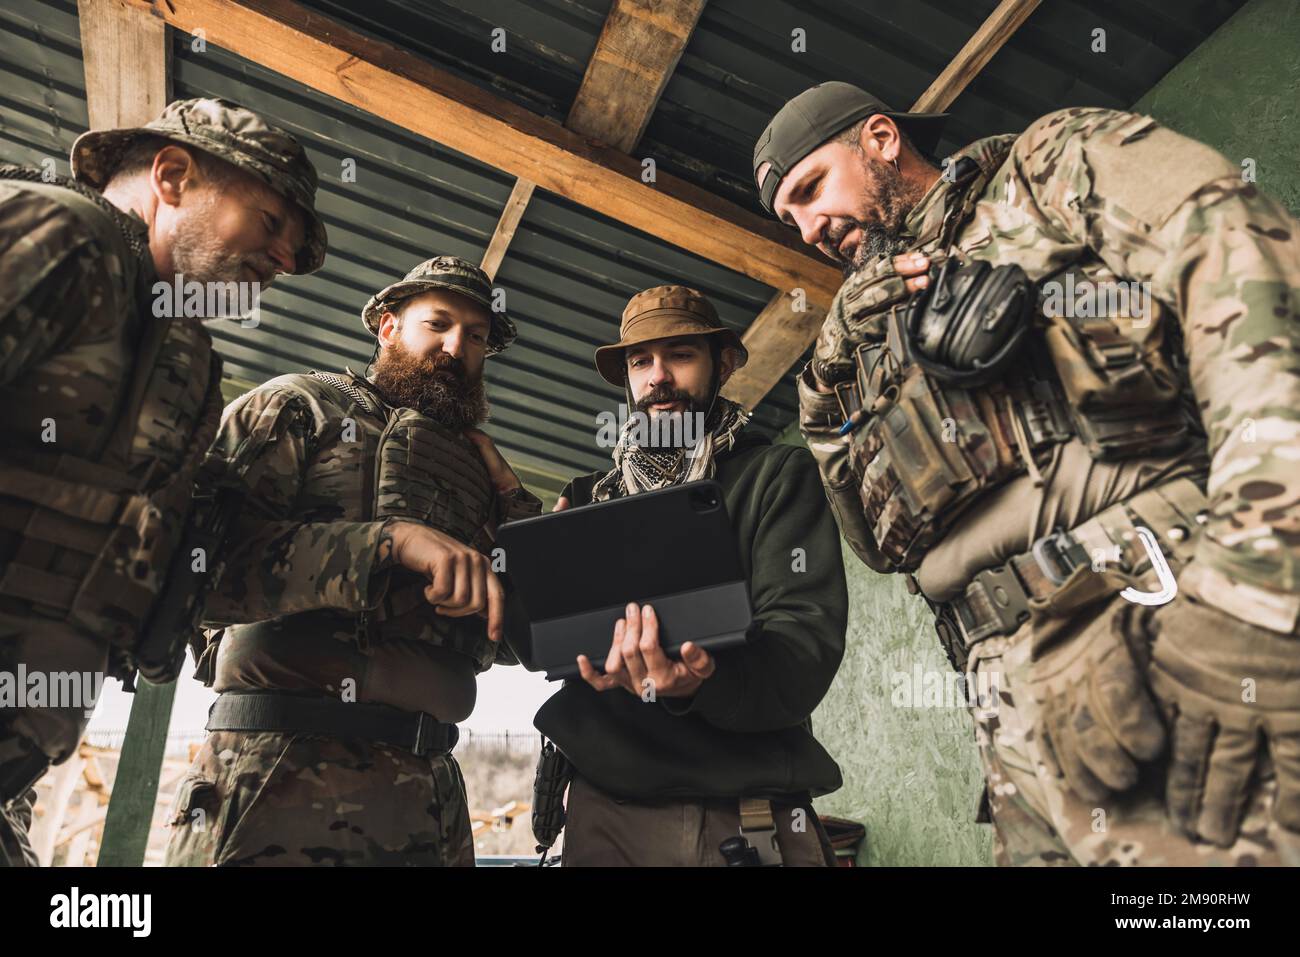 Groupe de soldats discutant de quelque chose avant le combat Banque D'Images